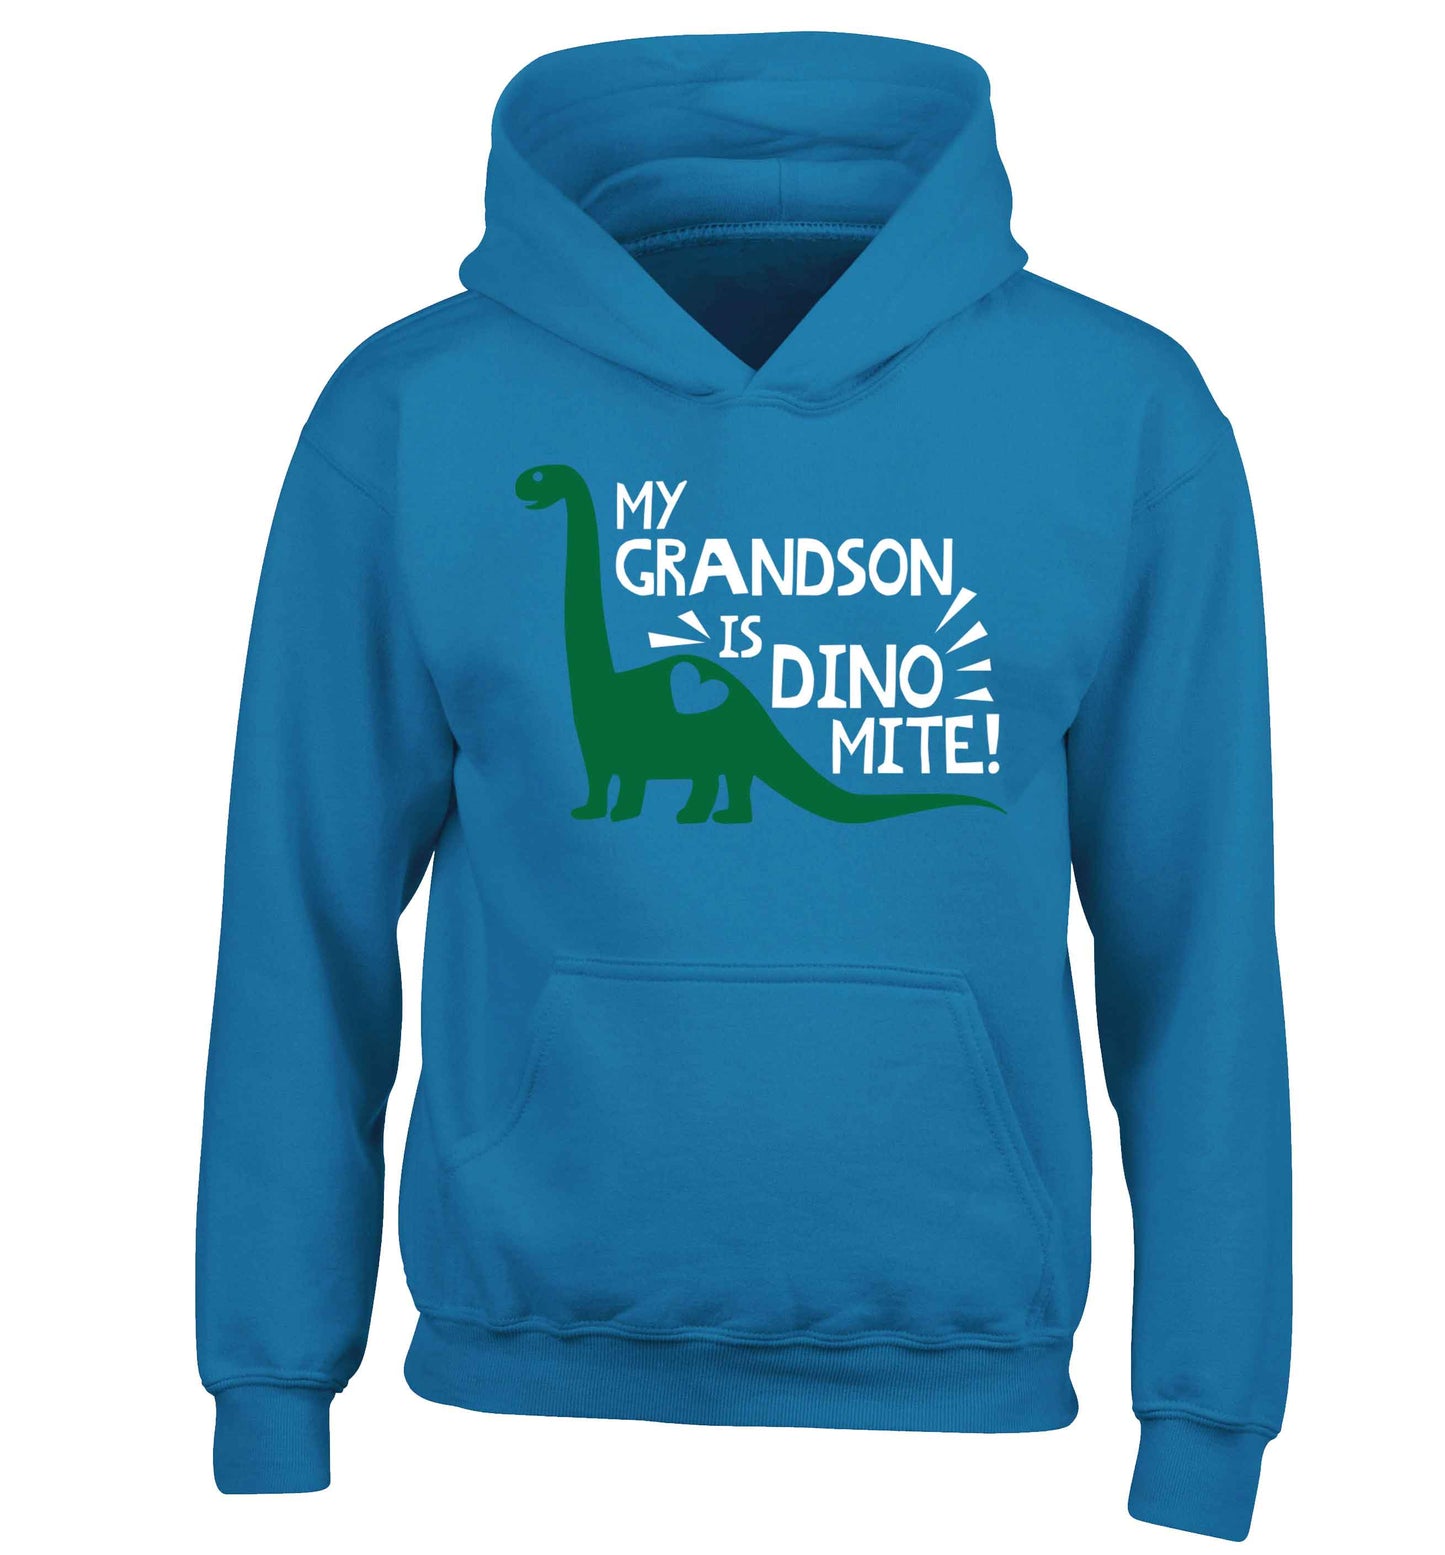 My grandson is dinomite! children's blue hoodie 12-13 Years